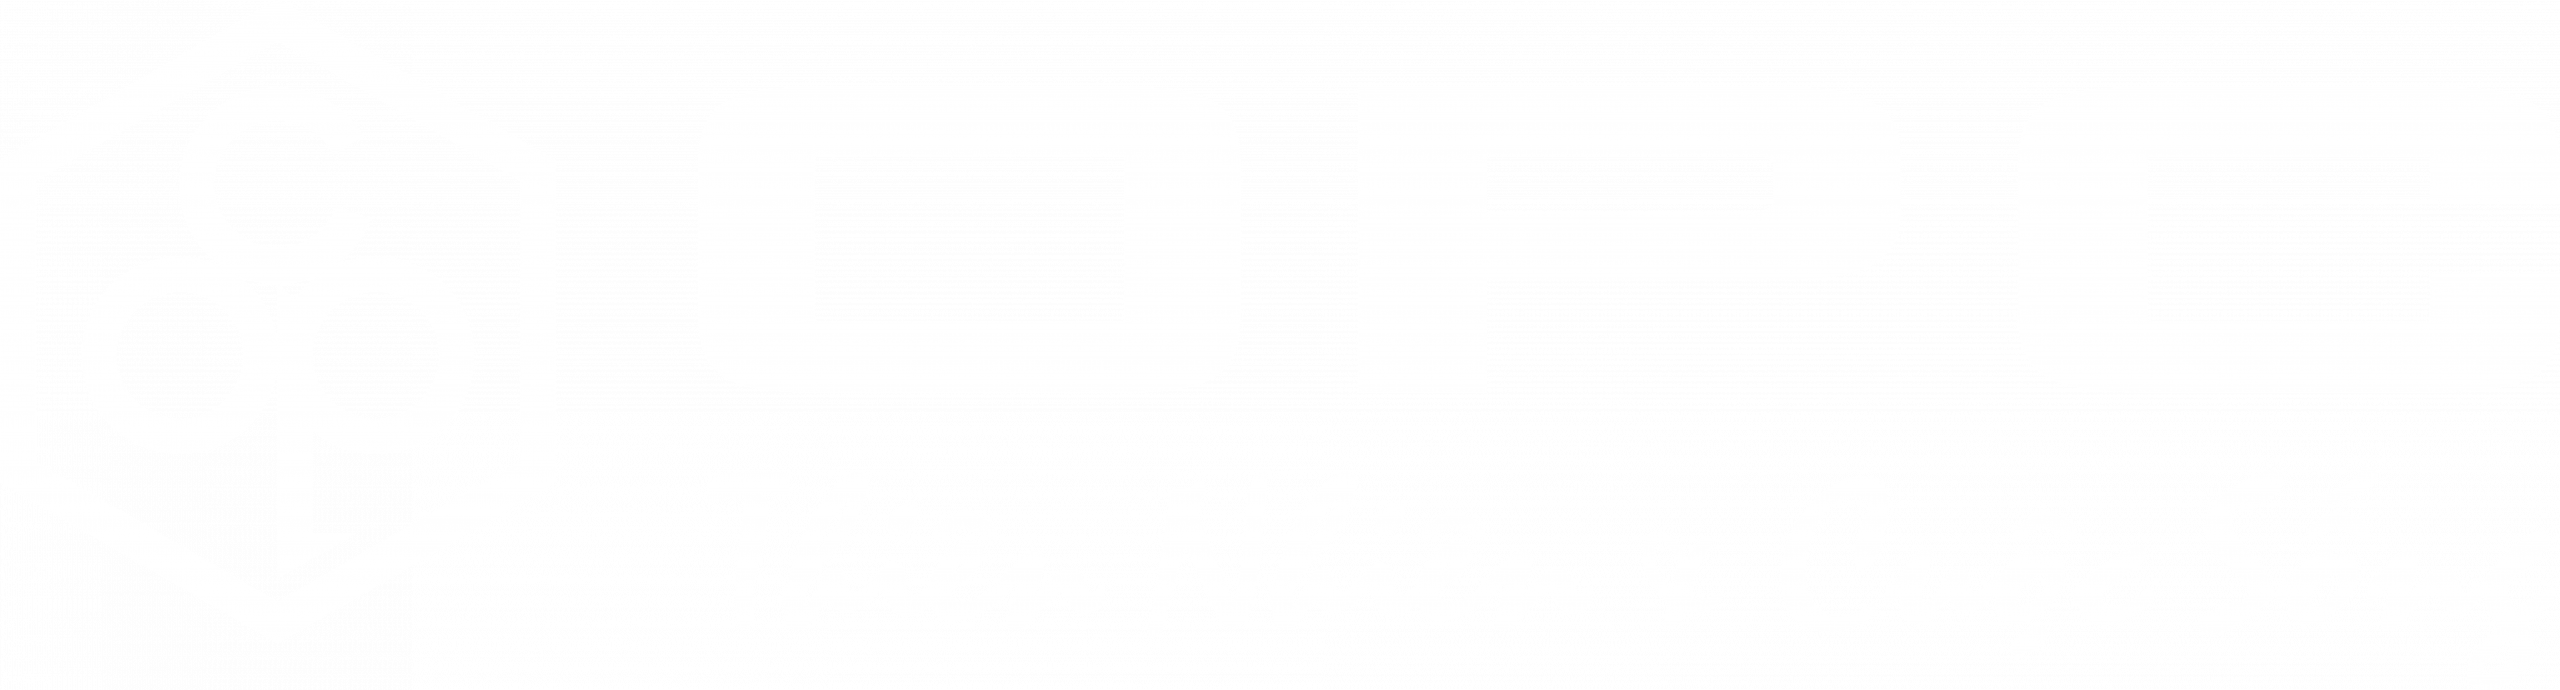 Logo OPC 01 copy